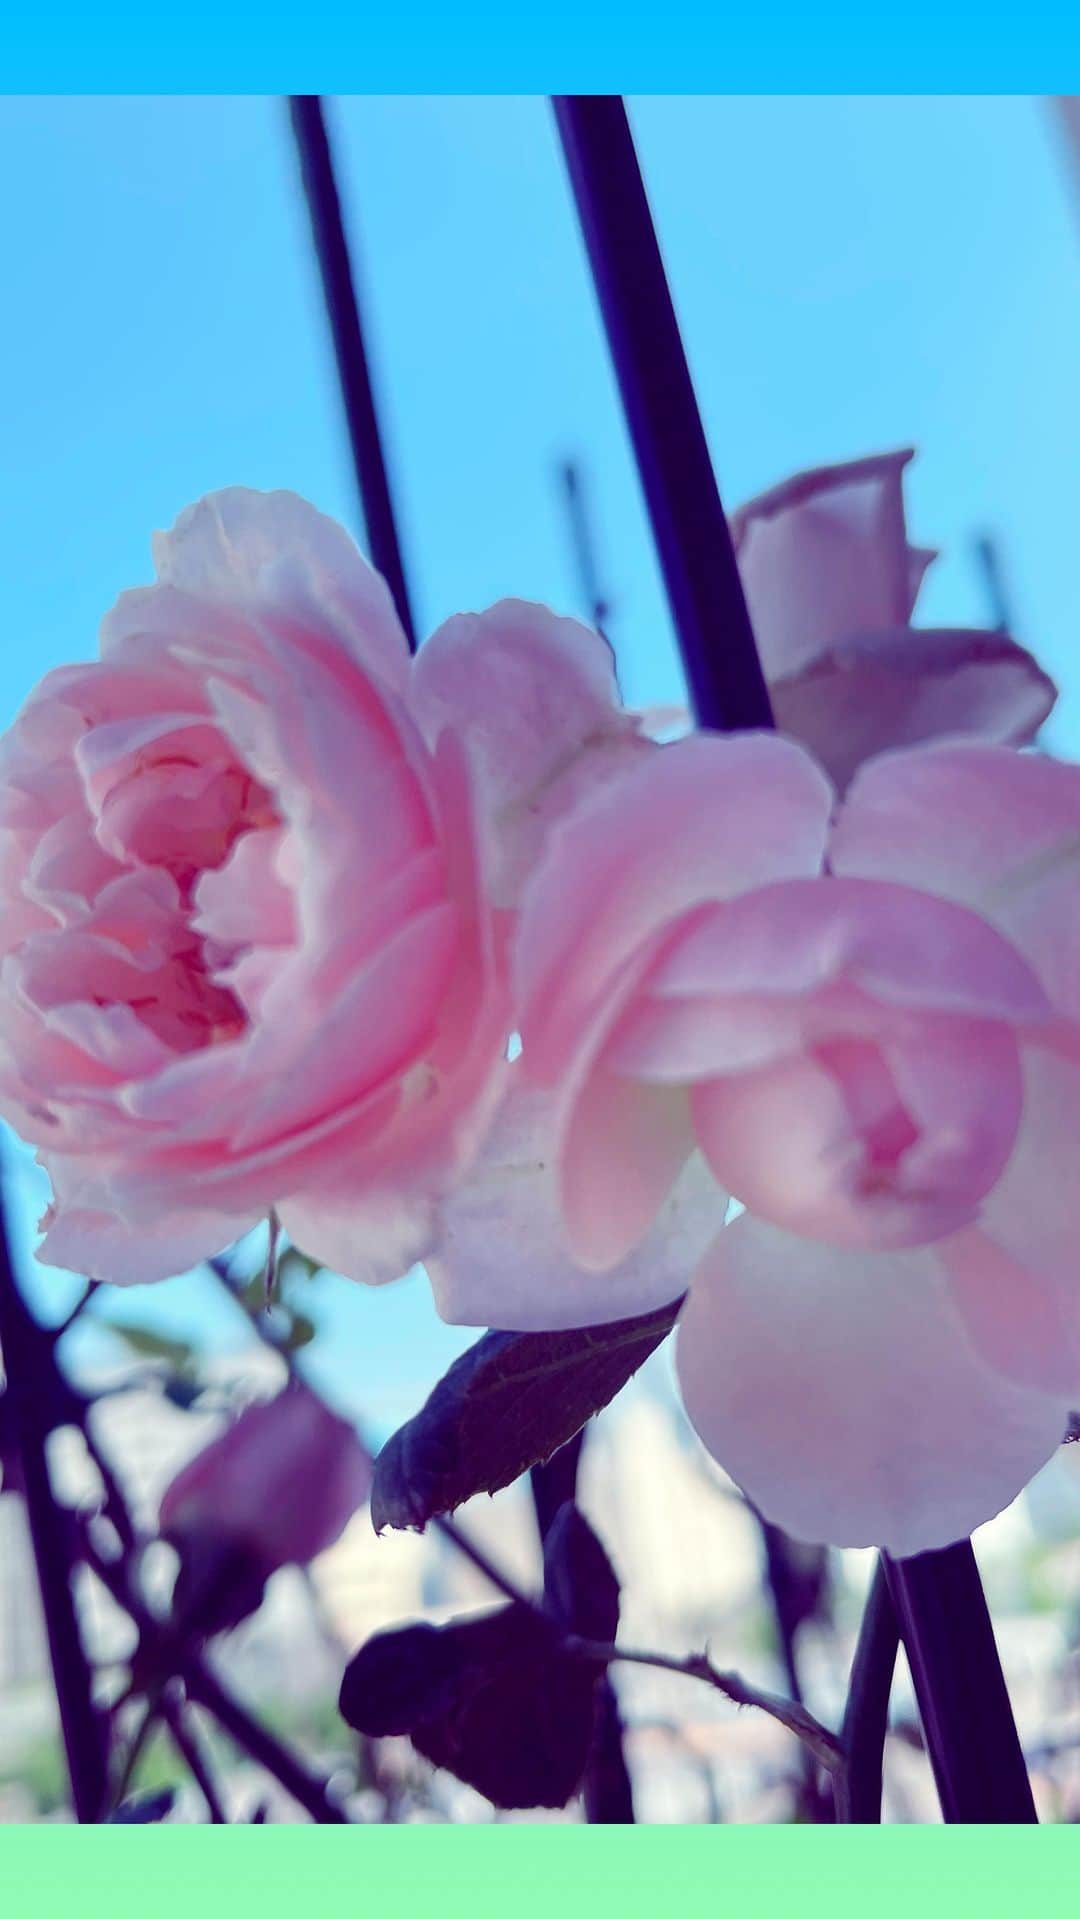 大黒摩季のインスタグラム：「My sweet pink rose 💐 ryuchell  日本全国の皆様へ 大黒摩季からのお願い  私の可愛いsweet rose🌹  まだ咲き始めのCuteな Pink Rose💐  My sister❤️ryuchell👠✨  が空に羽撃いていきました  ママの時と同じ 突然、神隠しみたい  私は、ツアーファイナルに来た あの子と、仲良しSister Sakumiと💓終演後にキャアキャア✨写真を撮っては  『摩季姐みたいになりたい❣️摩季姐のそのキラキラワンピ今度着せて〜〜〜っ💓🤗  ツアー終わったら絶対お家に遊び行きたい❣️Sakuちゃんと沖縄案内したいからいこ行こ😆💖👆。。。etc.』  なんて、まるで女子高生同士みたいに、キャンキャン💕して  Sakuちゃんが先週会った時も 可愛く楽しく愛しい あの子👠✨で、沖縄行きのことマジで進めてたらしいから  みんな神隠し気分なの  だから  まだ警察が調べてるとこだし  周りの方々どうか  〜〜〜だと思う 〜〜〜気がする 〜〜〜かもしれない  ってことが  違いない、になって  〜みたいよ、と噂になって  まるで事実みたいになっちゃうから  ryuchell👠✨を本当に好きだったら、そういうことを書かずに  静かに受け止めませんか？  ネットやSNSの記事はずっと残るし、誰もが見るものだから  あの子の遺伝子✨ 息子ちゃんがいつか見て傷つくようなこと、言わないでおきませんか？  運命や性（さが）や世論や、色んなものと闘って、それでも自分らしい花を咲かせようと頑張り続けて  やっと自力で咲いて✨🌹  日々磨かれて綺麗になるのが嬉しくて💖  一層輝き💫まくっていた日々は、素晴らしく眩しい勲章みたいなもの  私は最高に大好きでRespect＆愛しいSweet sister✨👠  あんなに痛いほどPureなHeartはそういない  純粋培養＆絶滅危惧種と言ってもいいくらい清らかな心  これからの世の中に 必要な子です✨だから大切  人間ならばマイノリティでなくたって、痛みも苦しみも哀しみも沢山あるんです  それを、さも独特な苦しみみたいに言ってカテゴライズする自体が、区別であり差別なんです  弱さや痛みを本人が言わず出さなかったと言うことは、  もの言わず誇らしく強く咲く薔薇🌹のように  お涙ちょうだいして安い同情票をもらうより、凛と笑顔や生き様で光を放つ、真のカリスマに育っていたと言うこと  死ぬ人がみんな哀しみながら死ぬと決め込んでる人が  憶測と仮説で最もらしくいえば その人の価値が下がるだけです  少なくとも私のママは がん治療は辛くても毎日笑って楽しんで、私のディナーライブに着る服をどこで買うか幸せな悩みの中で、突然心肺停止したので  不幸な死ではありません  幸せでも来るべき時は来るんです  あの子を汚すと言うことは  自由に生きたいだけの あの子に憧れて頑張る子たちまでもが、いらぬ思想に毒されると言うこと  それを亡くなった後に 憶測を含めて  あーでもないこーでもないと 掘り進めれば  息子ちゃんを傷つけます  pecoちゃんの明日を行き難くします  だから  大黒摩季からのお願いです  みんな静かに メディアの皆様もどうか  出てきた事実を受け止めて  あの子のこれまでを Pecoちゃんと息子ちゃんの未来を、そっとしてあげて欲しいのです  私もこれをもって語らない  私の中のあの子✨👠を愛しみ 心からのご冥福と、ご家族のこれからを祈るだけです  非常勤のお姉ちゃん 摩季姐は、あの子が愛した人と その未来を守る義務があるから  ryuchell👠✨安心してぐっすり眠ってね  Saku ちゃんと私たちにできることはやるから  My sweet pink rose 💐ryuchell  函館で一番永く生きている御神木にお願いしてきたよ  生まれ変わっても 私たち💓何度でも咲こうね💖  #ryuchell 　 #sweetrose  #mysister  #そっとしてあげて」